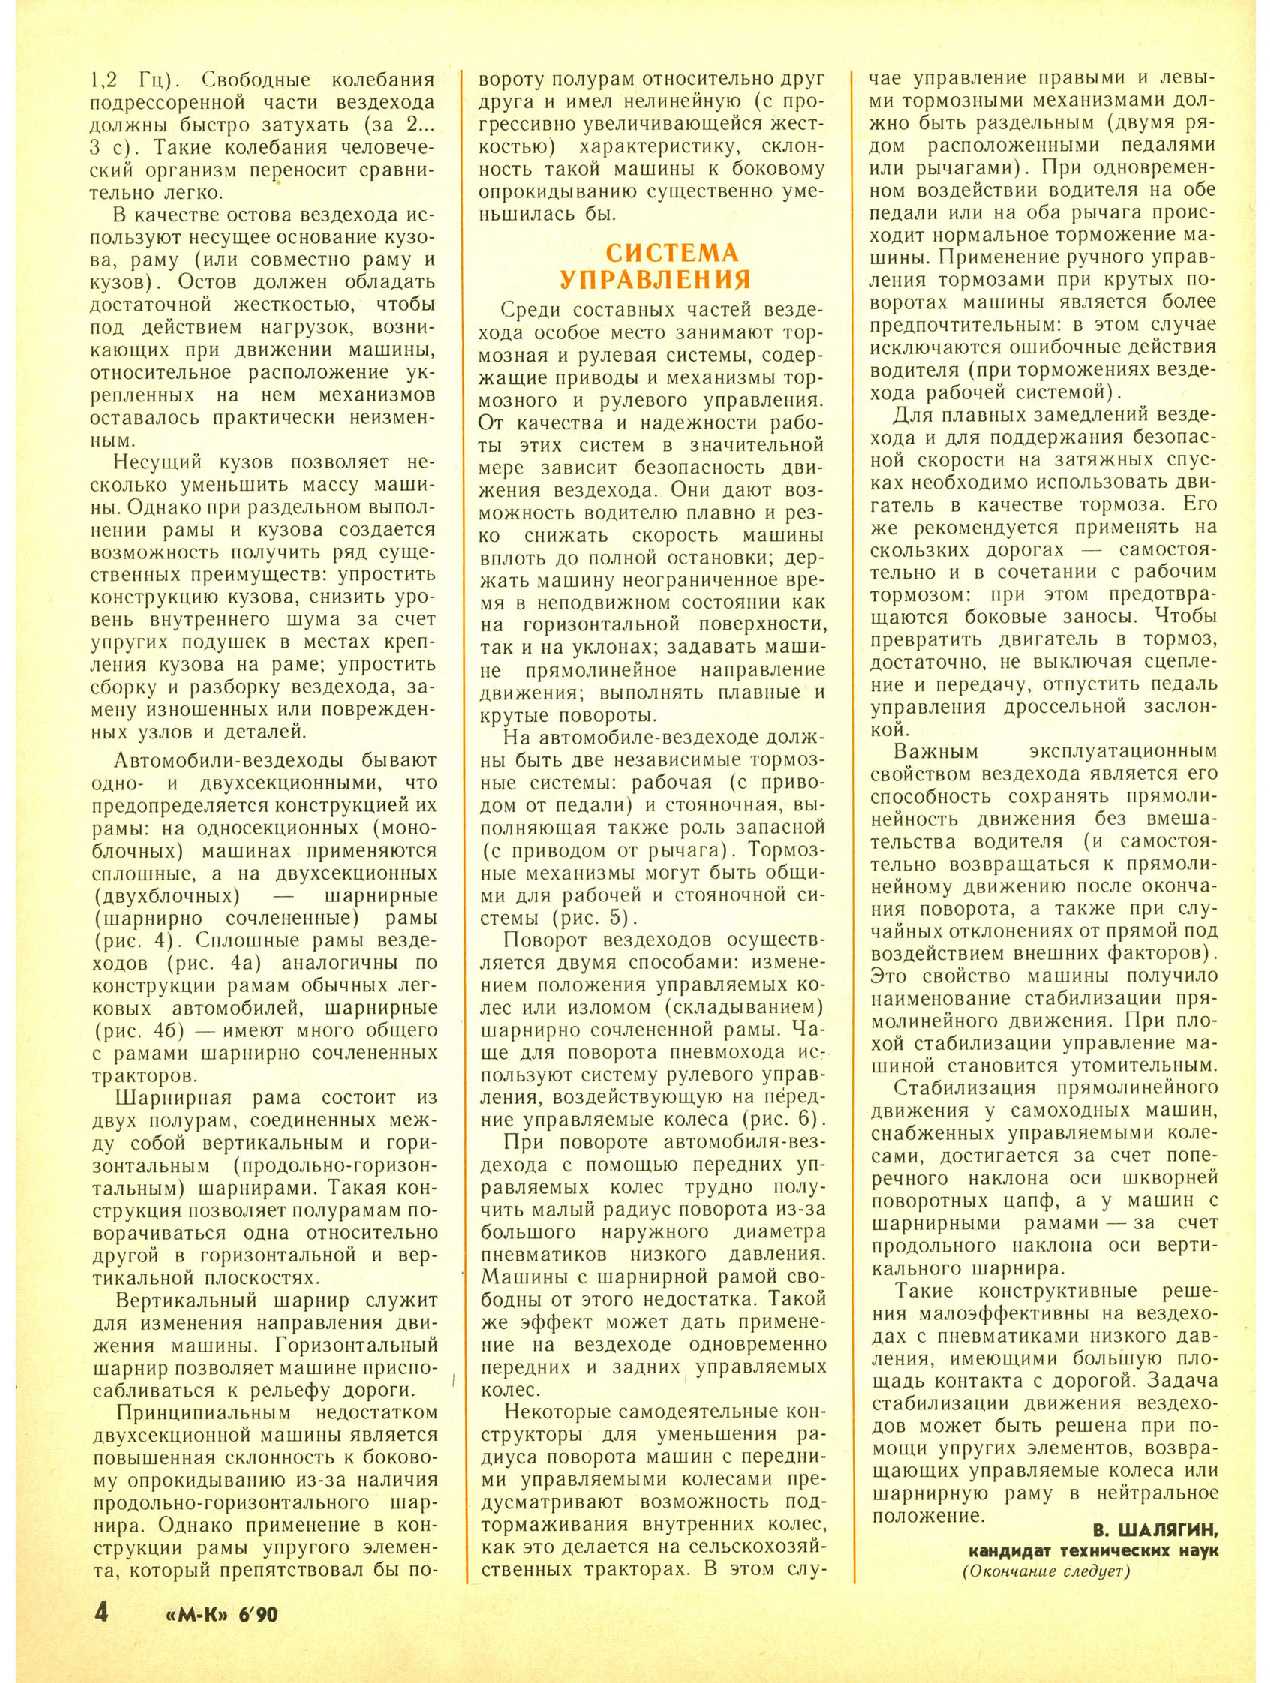 МК 6, 1990, 4 c.